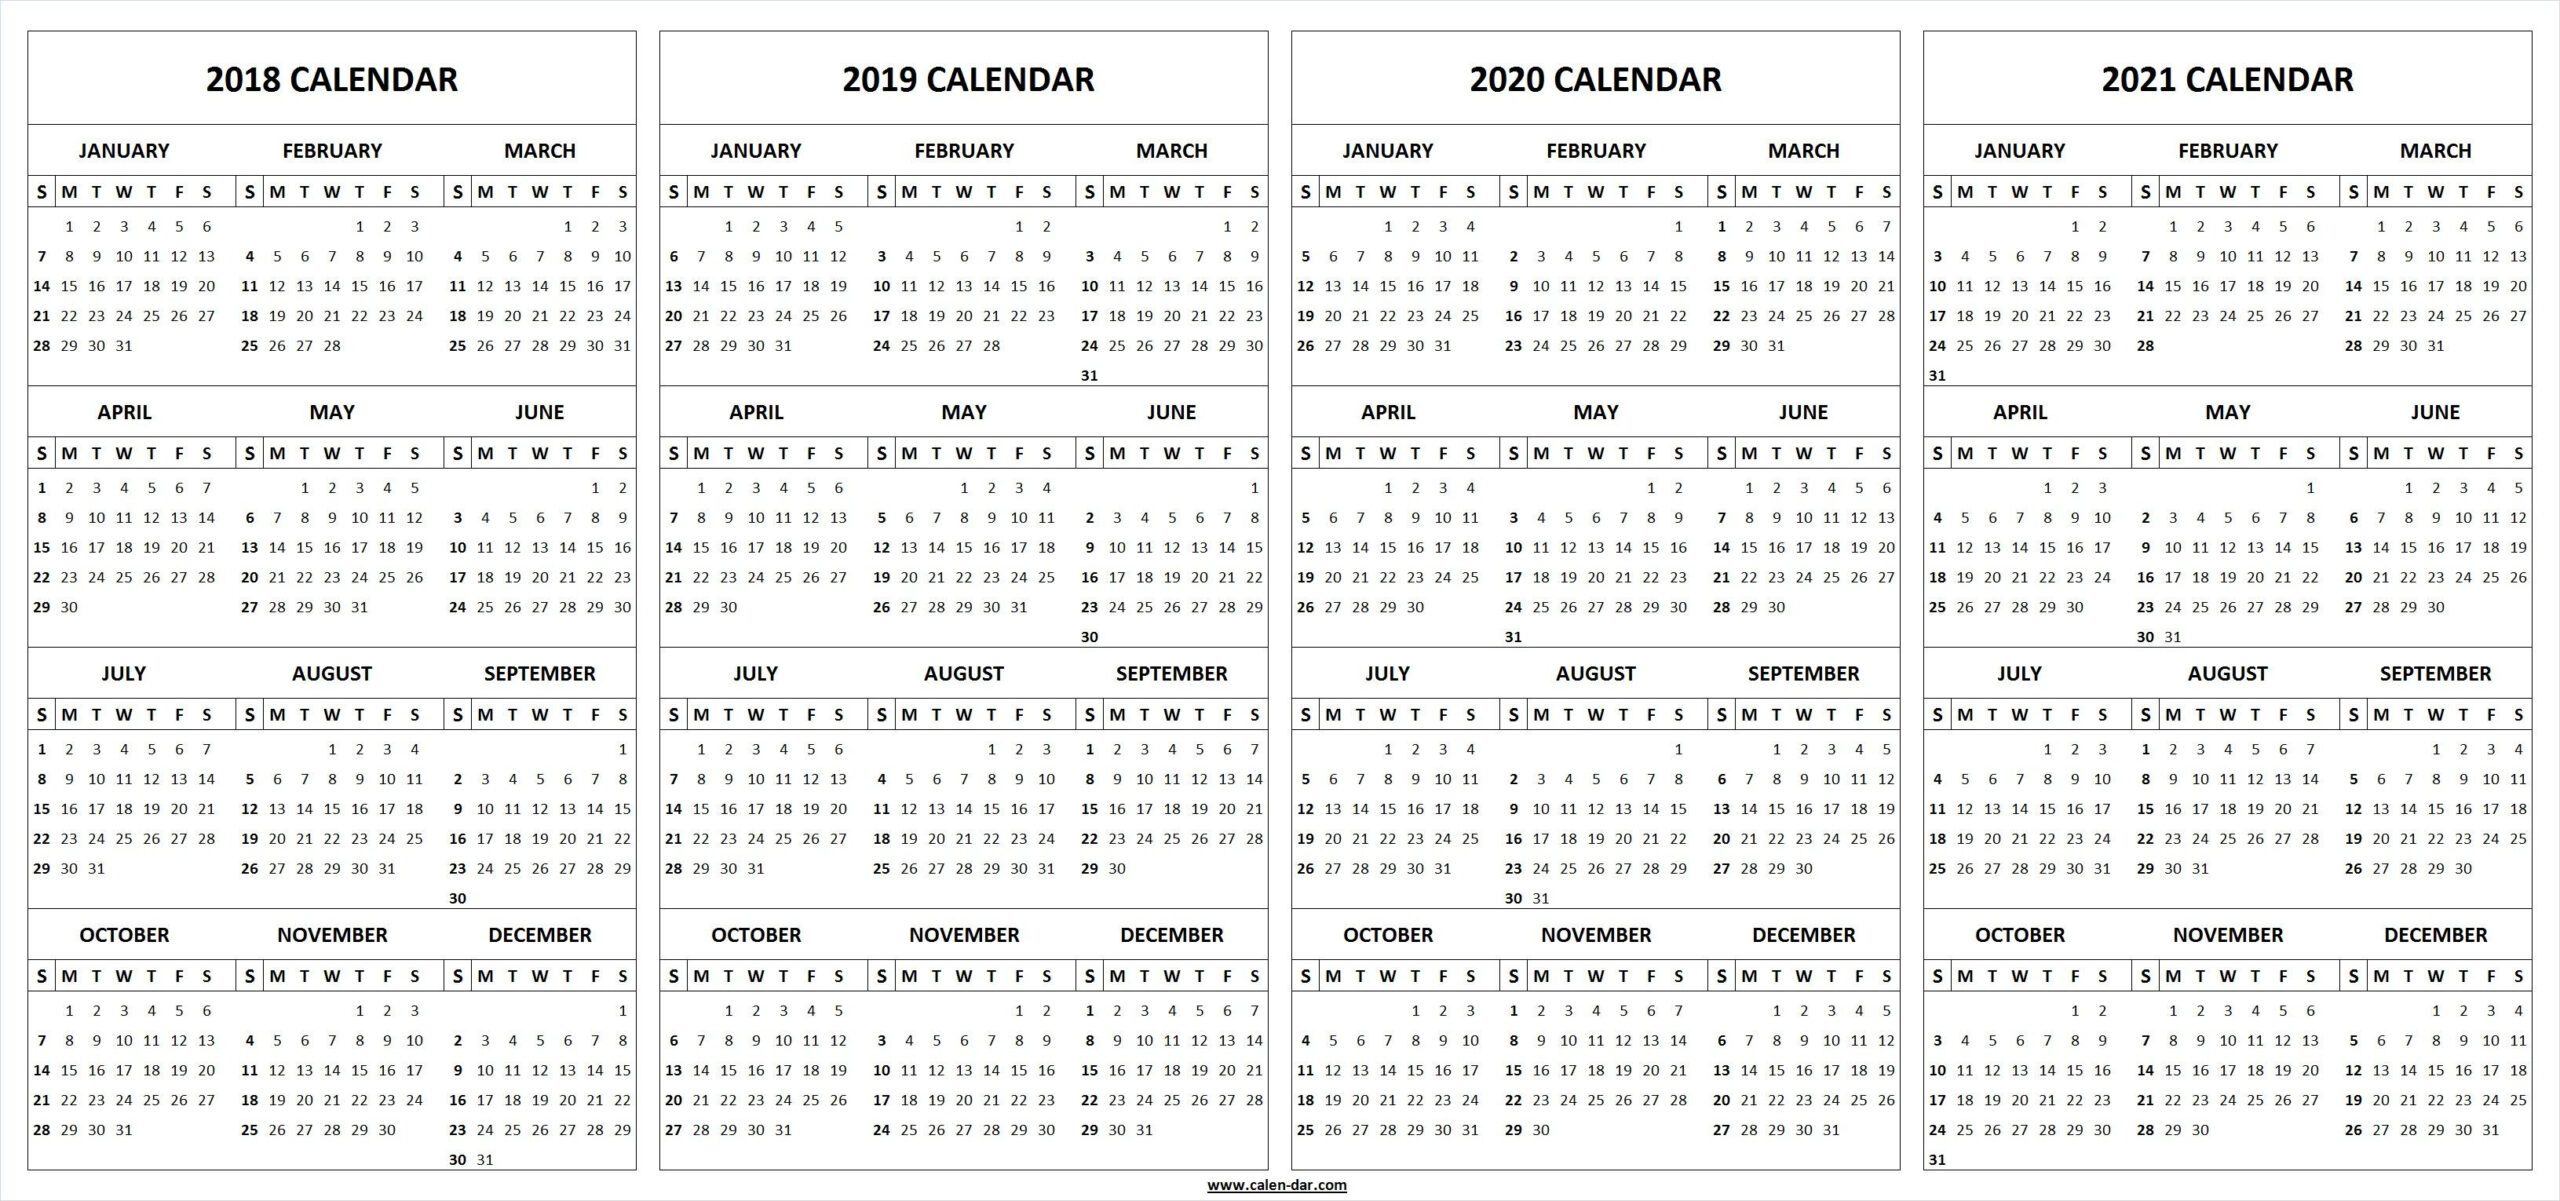 Indian River County Schools 2022-2023 Calendar - Calendar With Holidays-2021 And 2022 School Calendar Indian River County